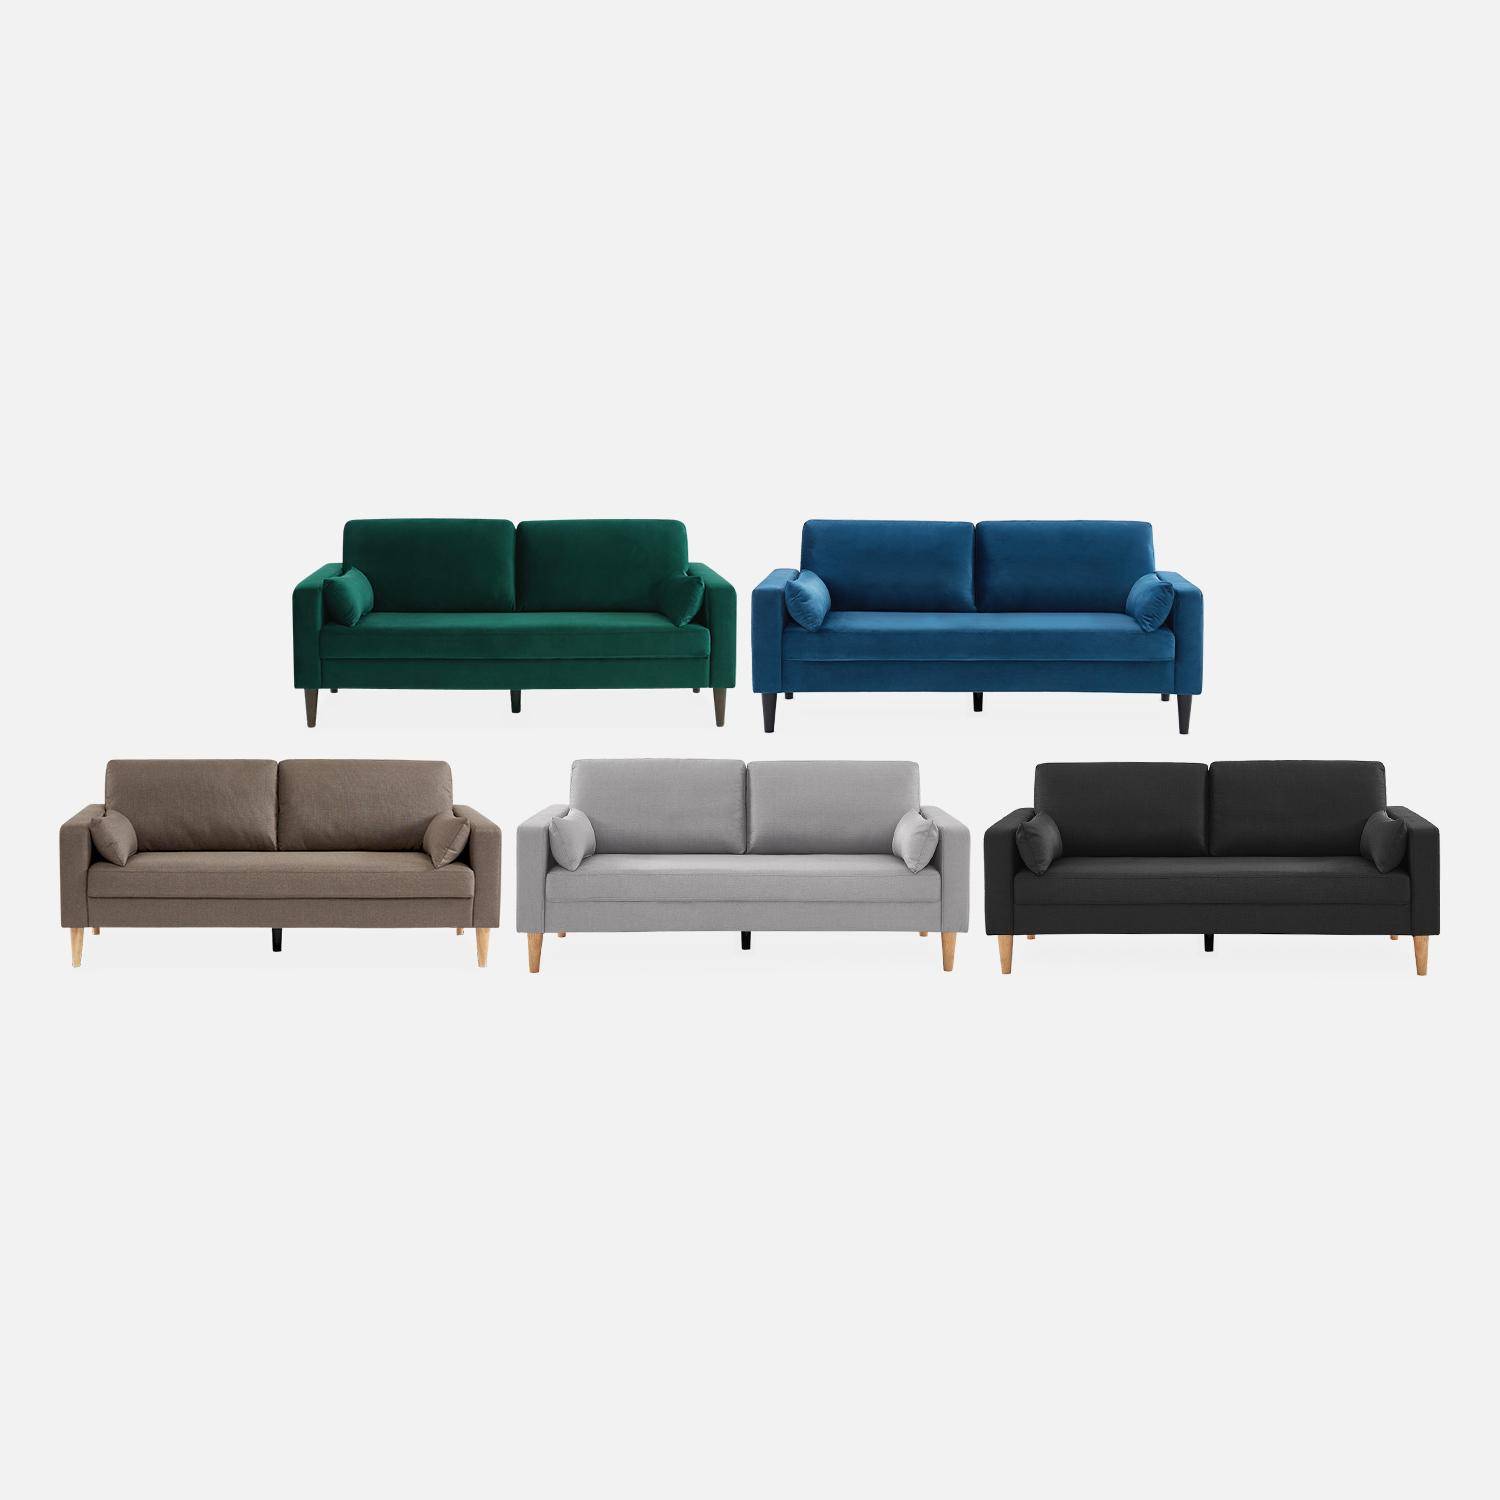 Donkergrijze stoffen driezits sofa - Bjorn - 3-zits bank met houten poten, scandinavische stijl   Photo6